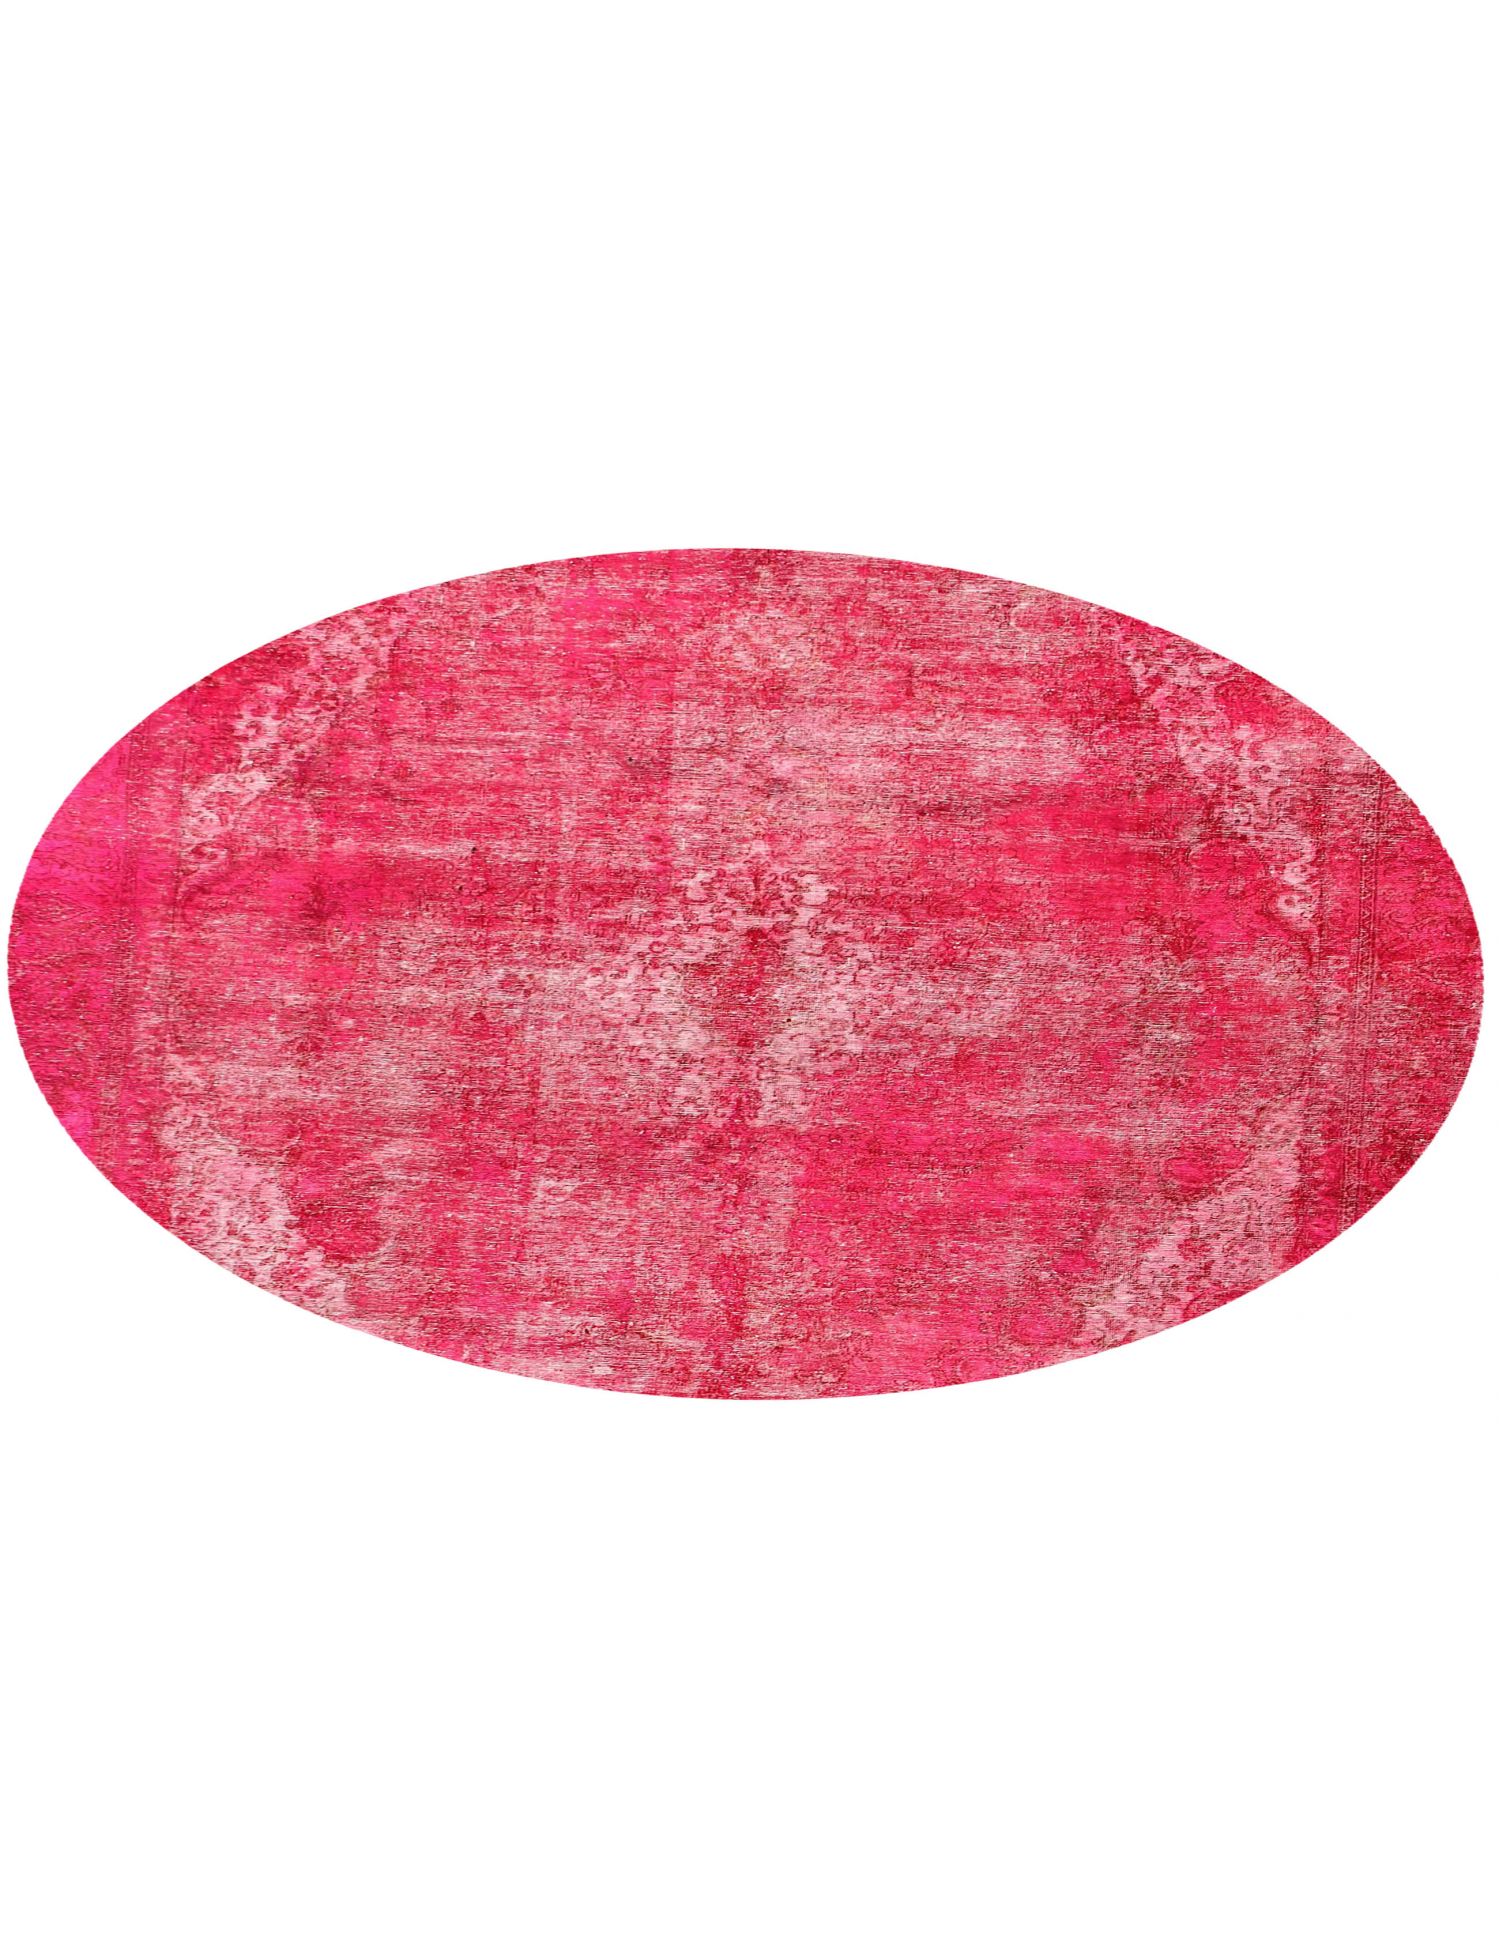 Rund  Vintage Teppich  rosa <br/>270 x 270 cm